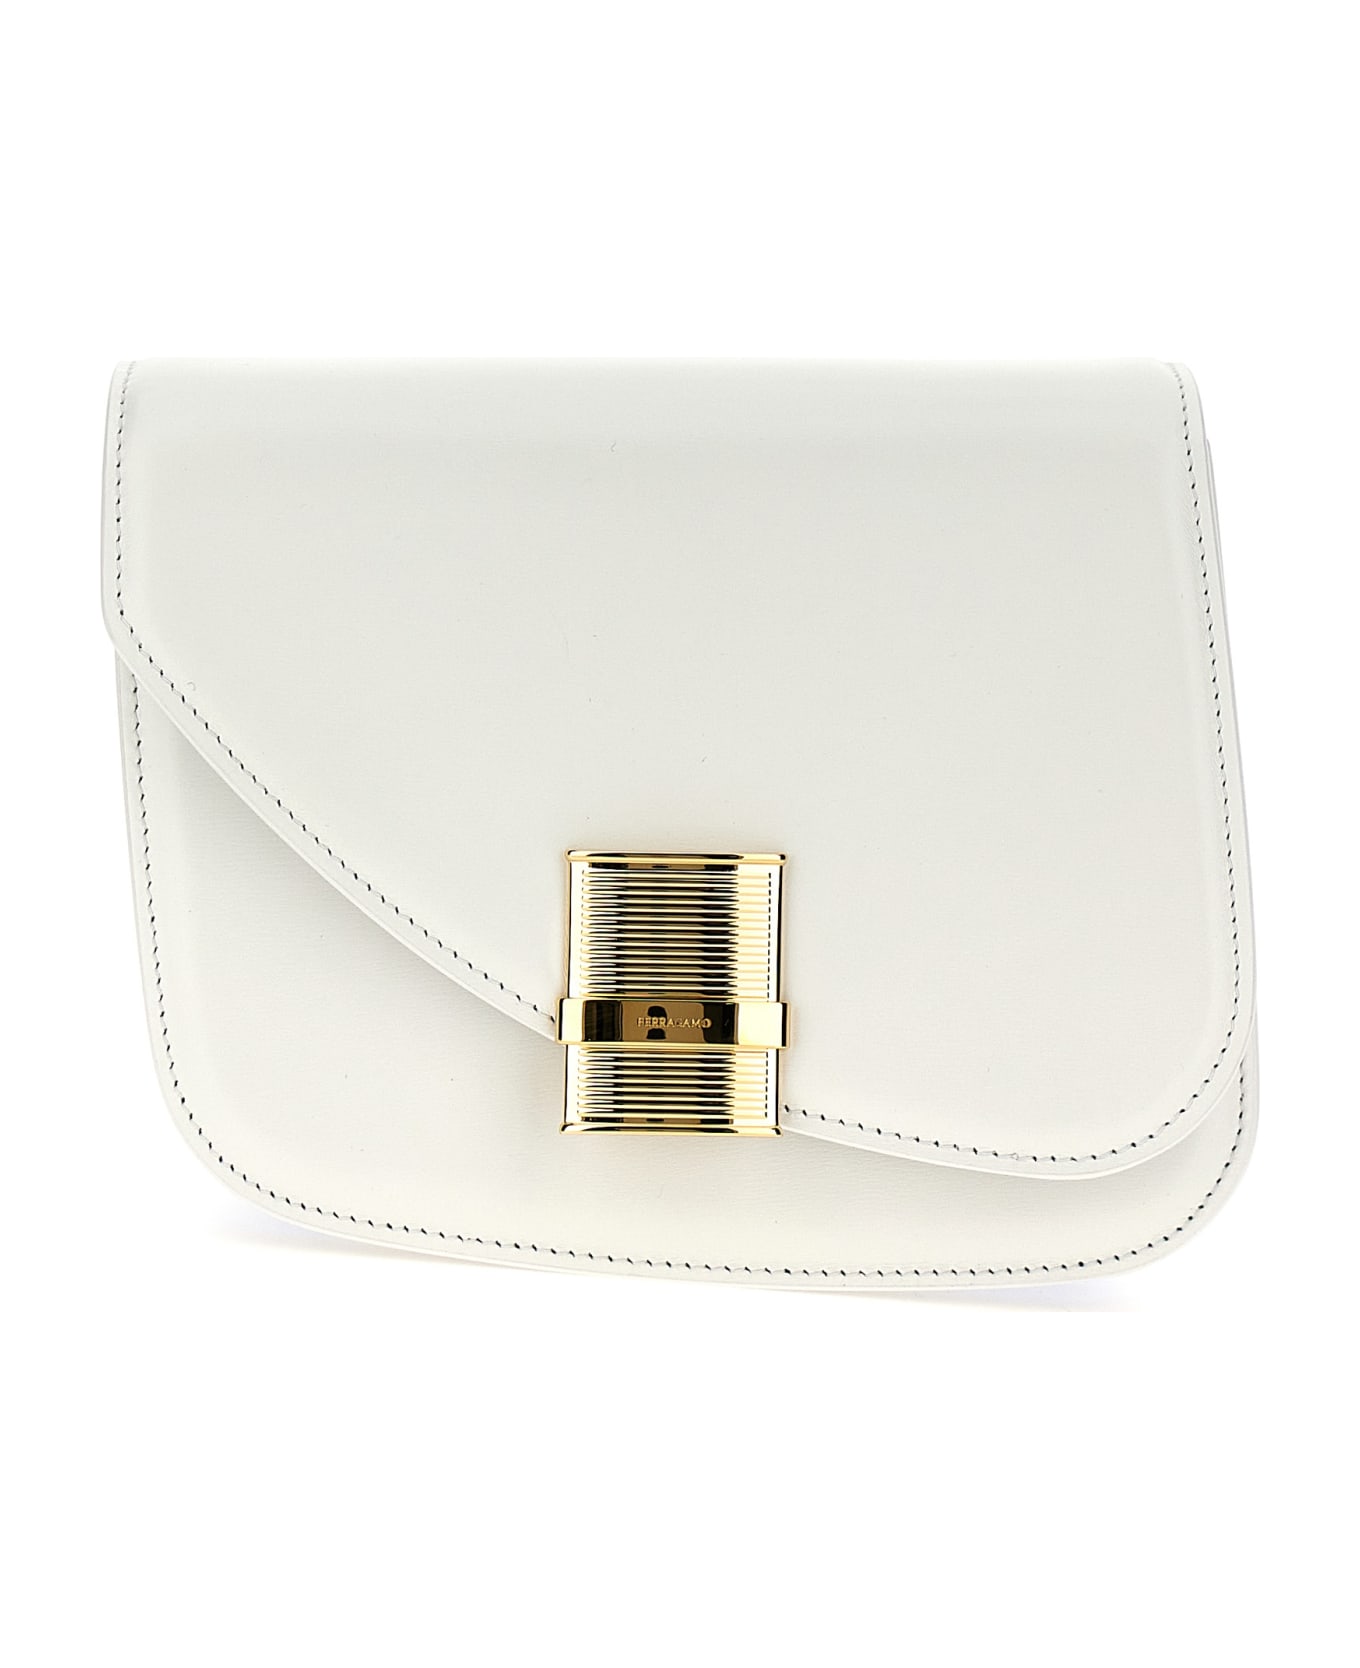 Ferragamo 'fiamma' Small Shoulder Bag - White